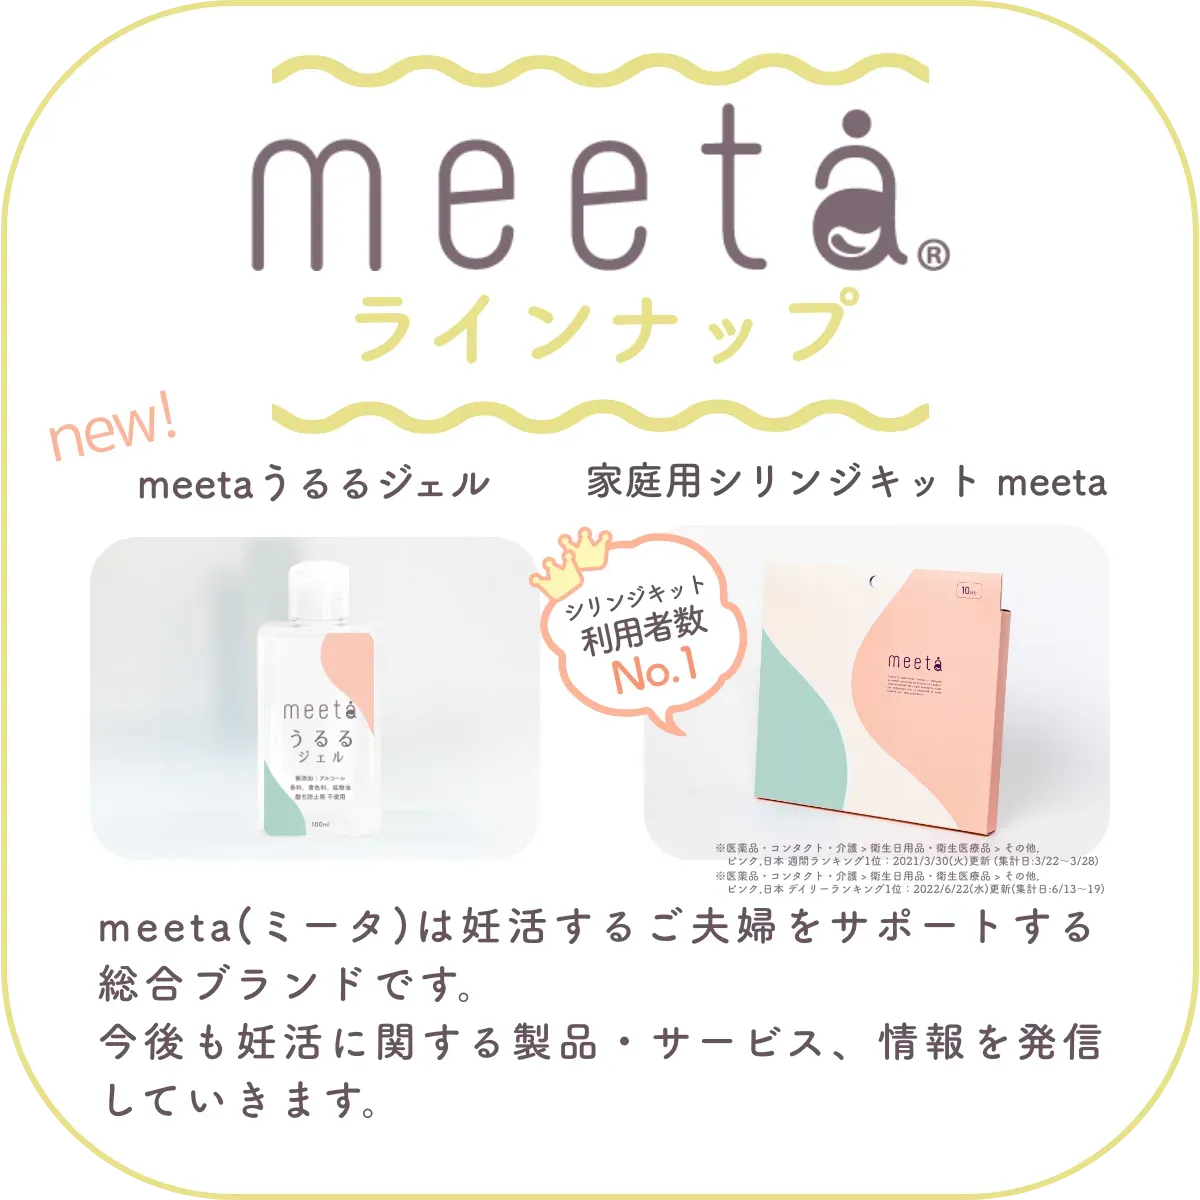 meetaラインナップ：meeta (ミータ)　うるるジェル、家庭用シリンジ法キットmeeta　meeta（ミータ）は妊活するご夫婦をサポートする総合ブランドです。今後も妊活に関する製品・サービス、情報を発信していきます。